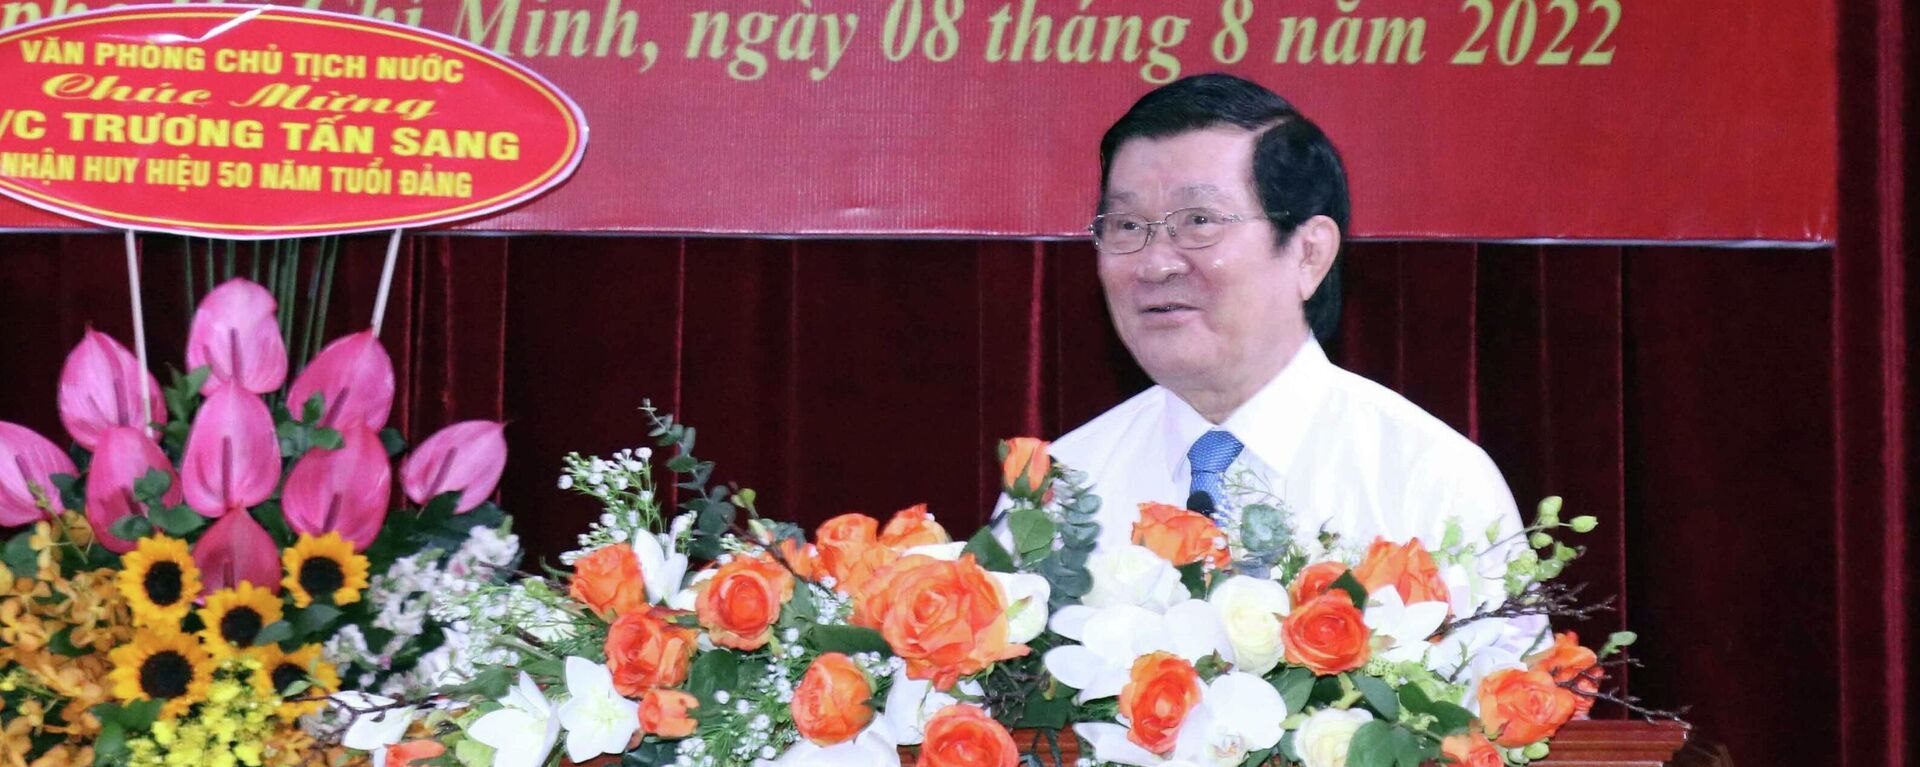 Trao tặng Huy hiệu 50 năm tuổi Đảng cho nguyên Ủy viên Bộ Chính trị, nguyên Chủ tịch nước Trương Tấn Sang - Sputnik Việt Nam, 1920, 08.08.2022